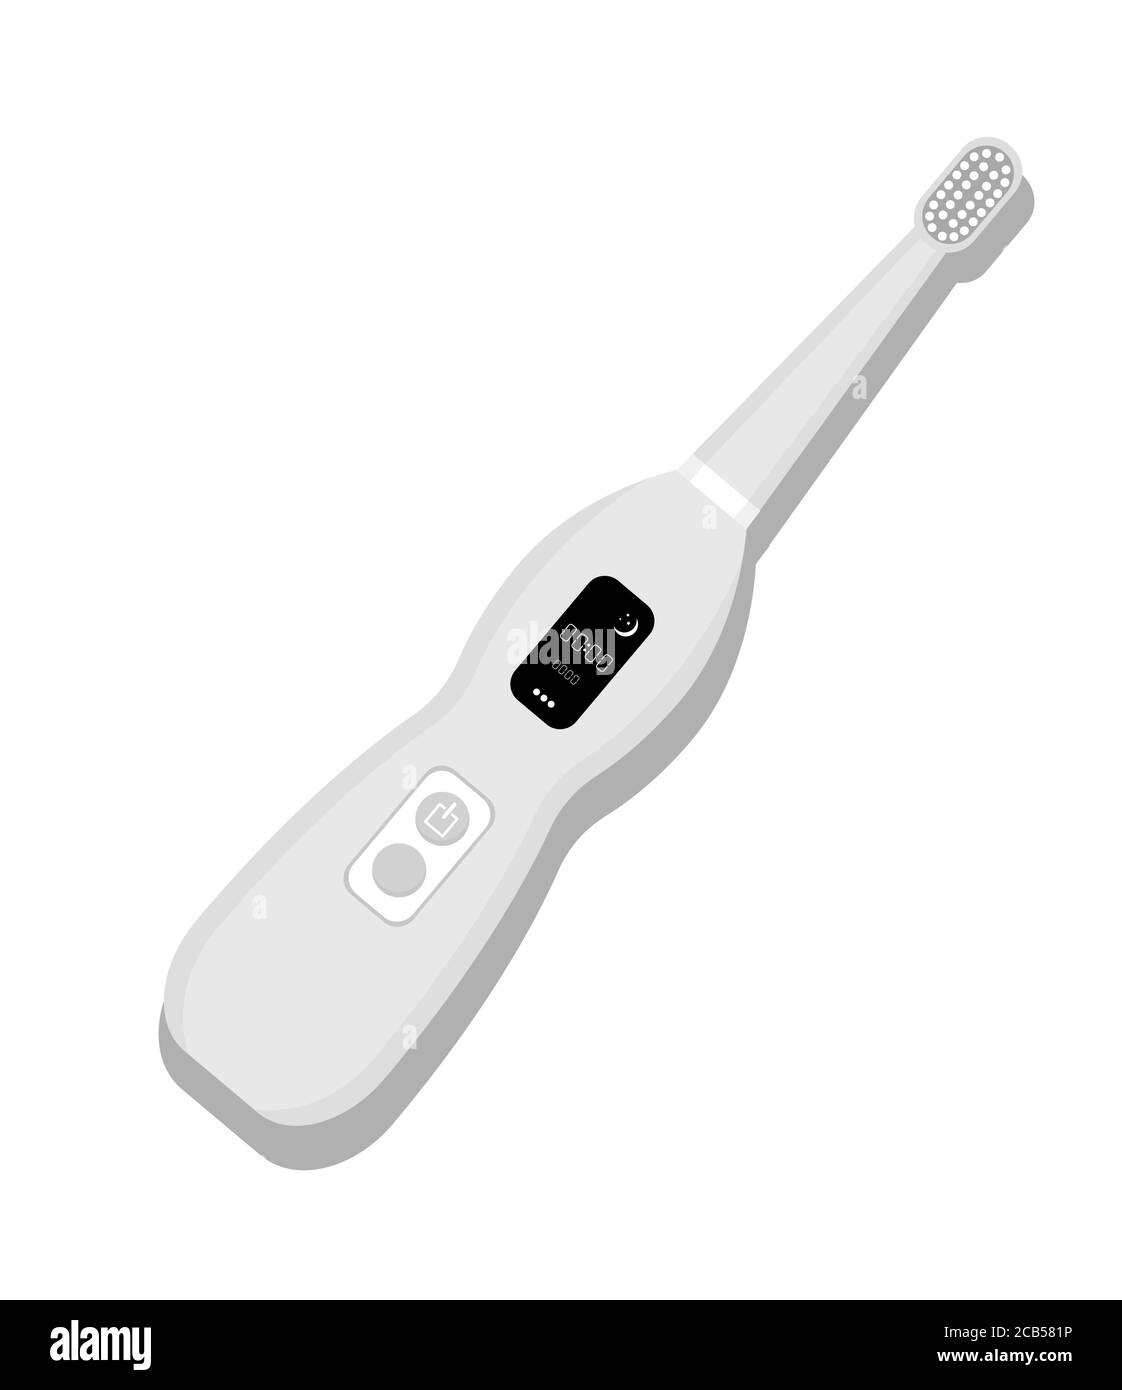 Icône de brosse à dents électrique isolée sur fond blanc. Élément de nettoyage des dents. Illustration de l'équipement dentaire. Outil d'entretien des dents Vector à plat Illustration de Vecteur